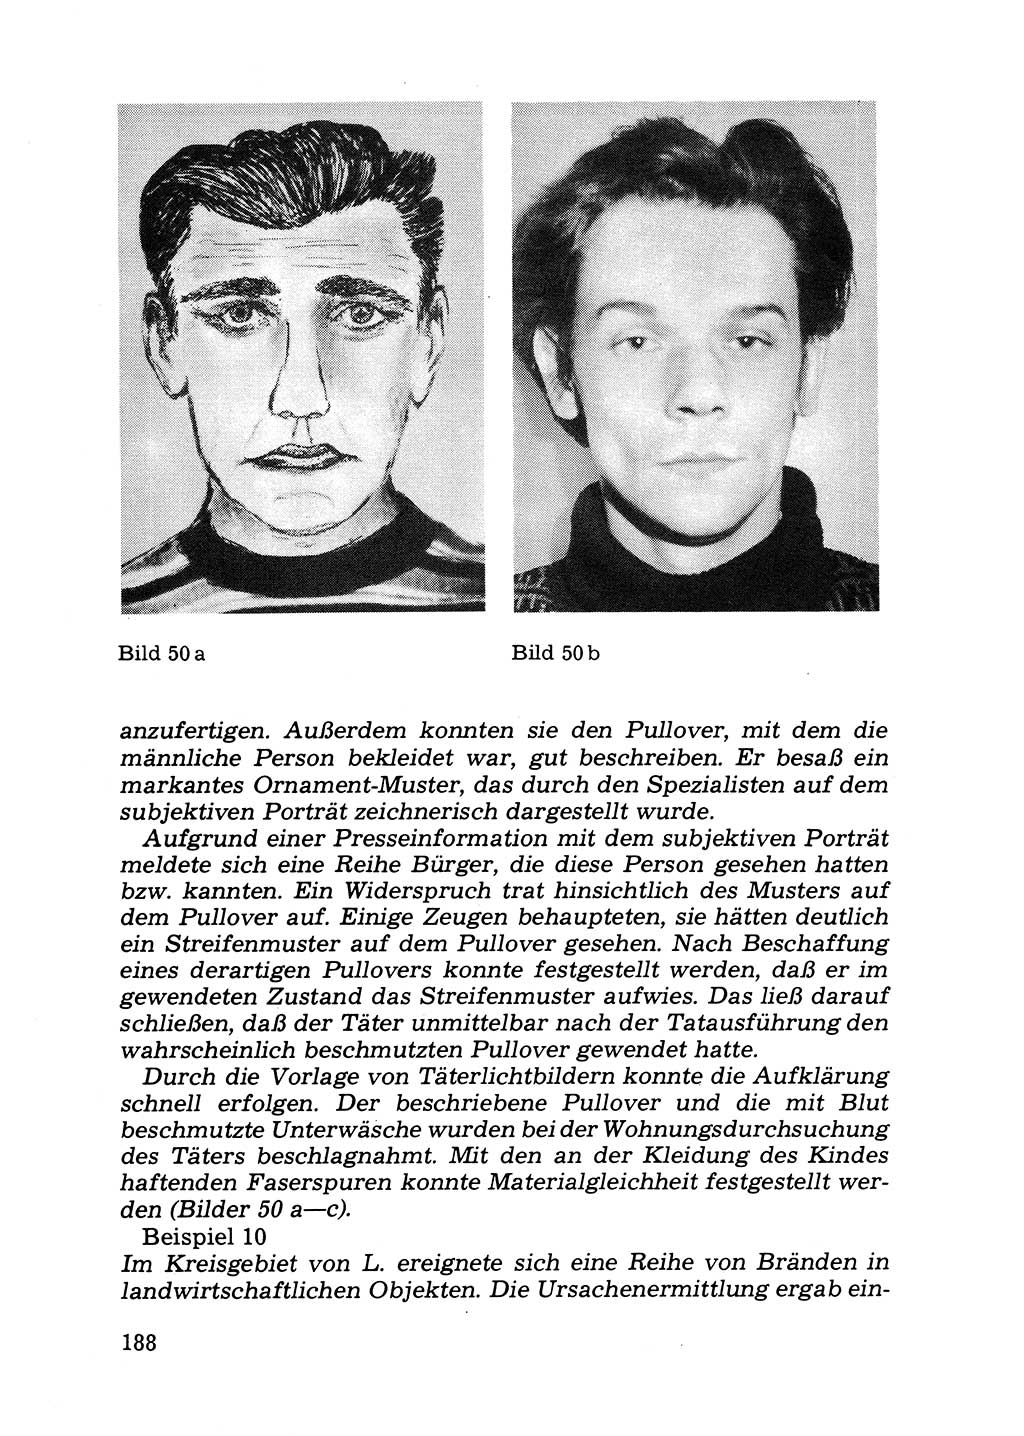 Das subjektive Porträt [Deutsche Demokratische Republik (DDR)] 1981, Seite 188 (Subj. Port. DDR 1981, S. 188)